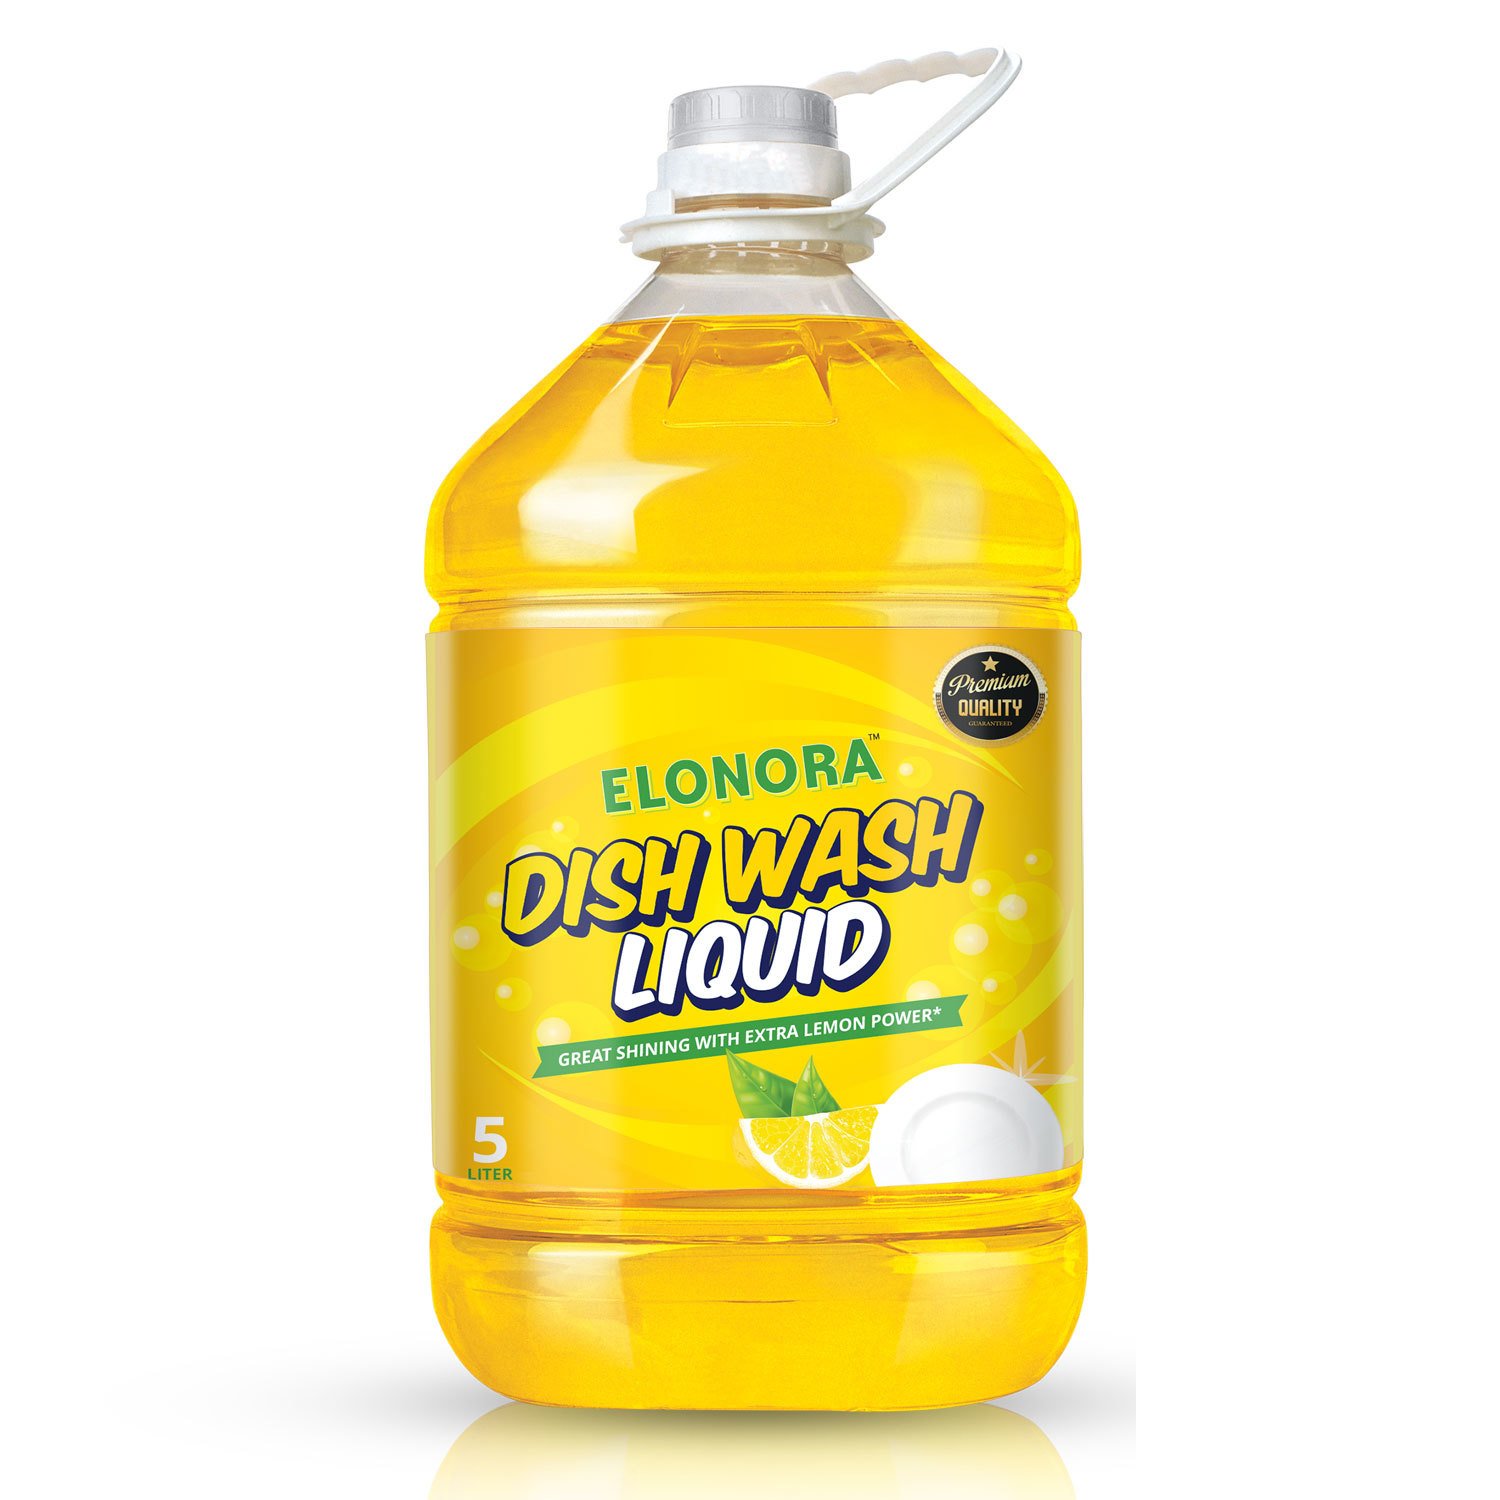 Elonora Dishwash Liquid